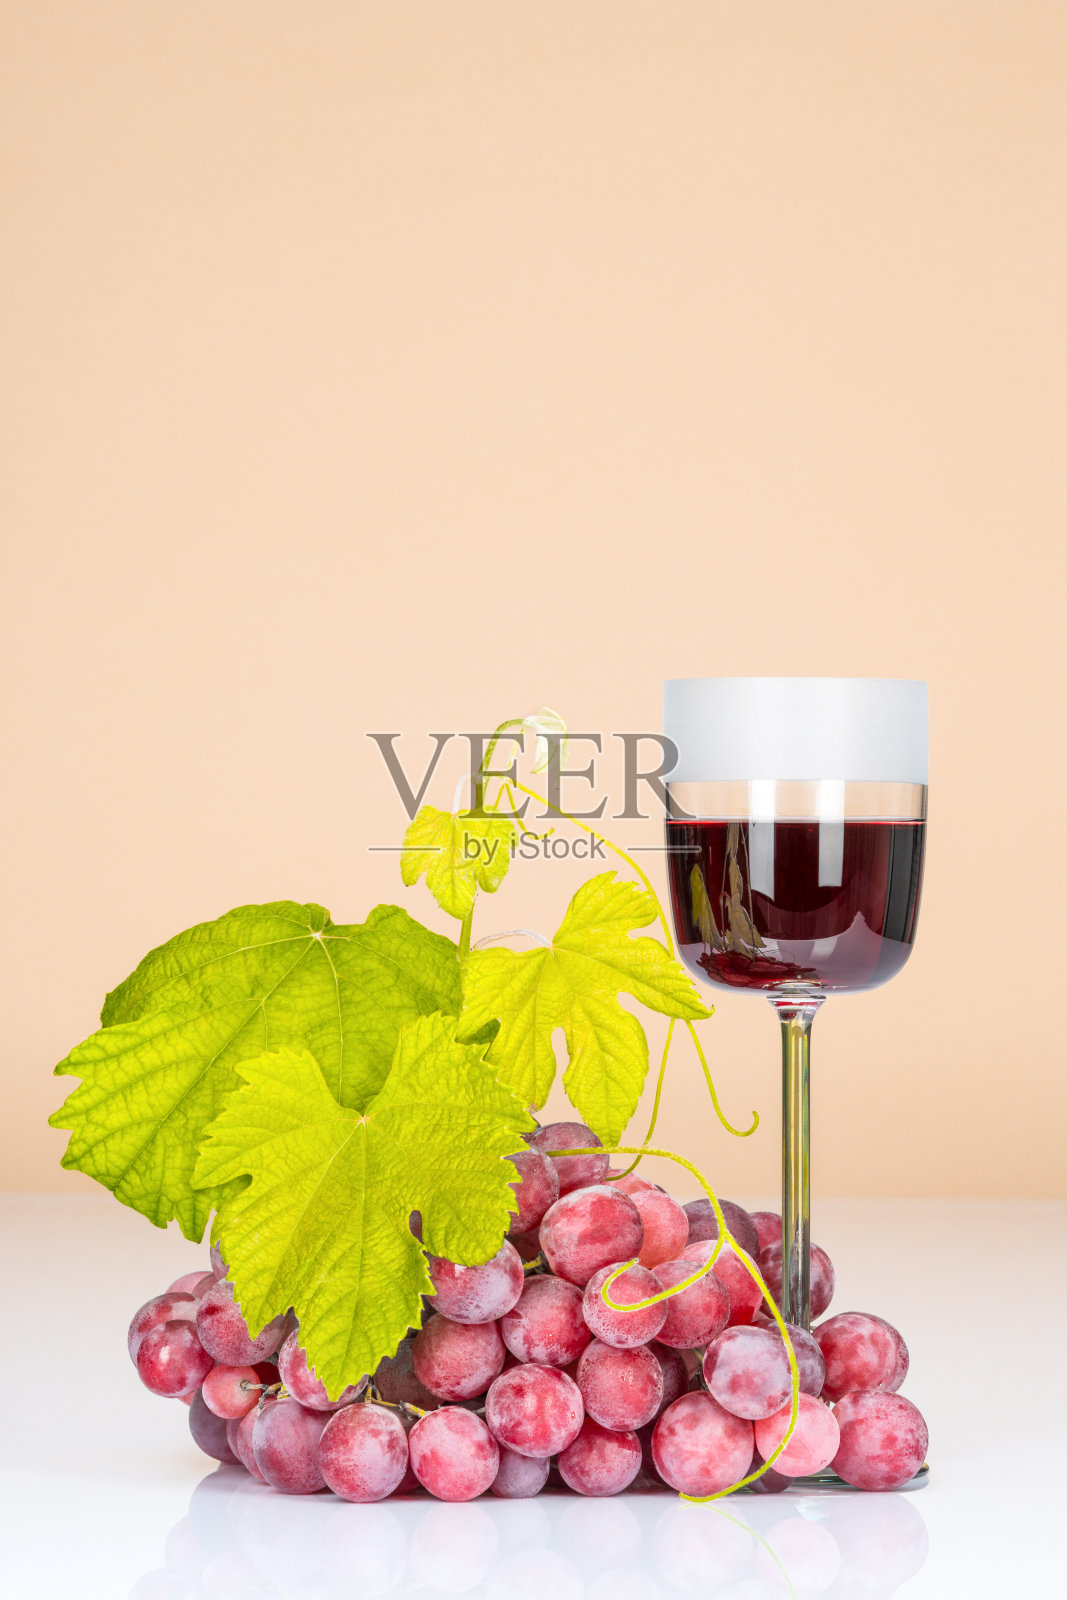 葡萄、葡萄酒和葡萄酒杯照片摄影图片